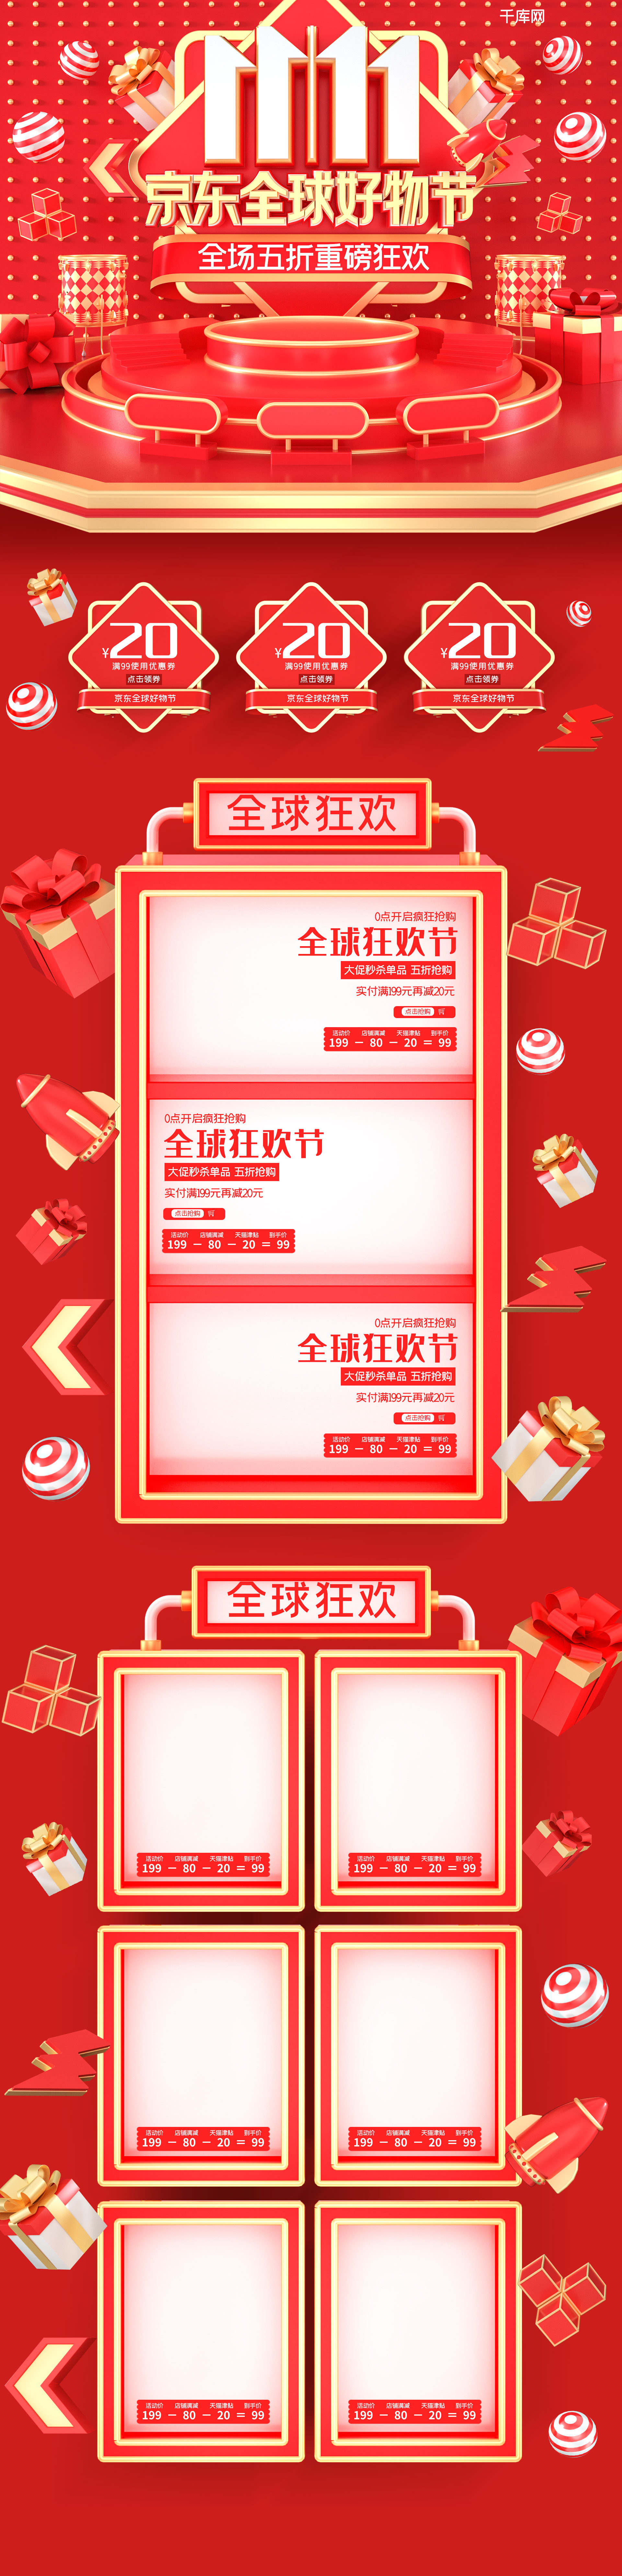 双11双十一京东全球好物节红色c4d电商首页模板图片